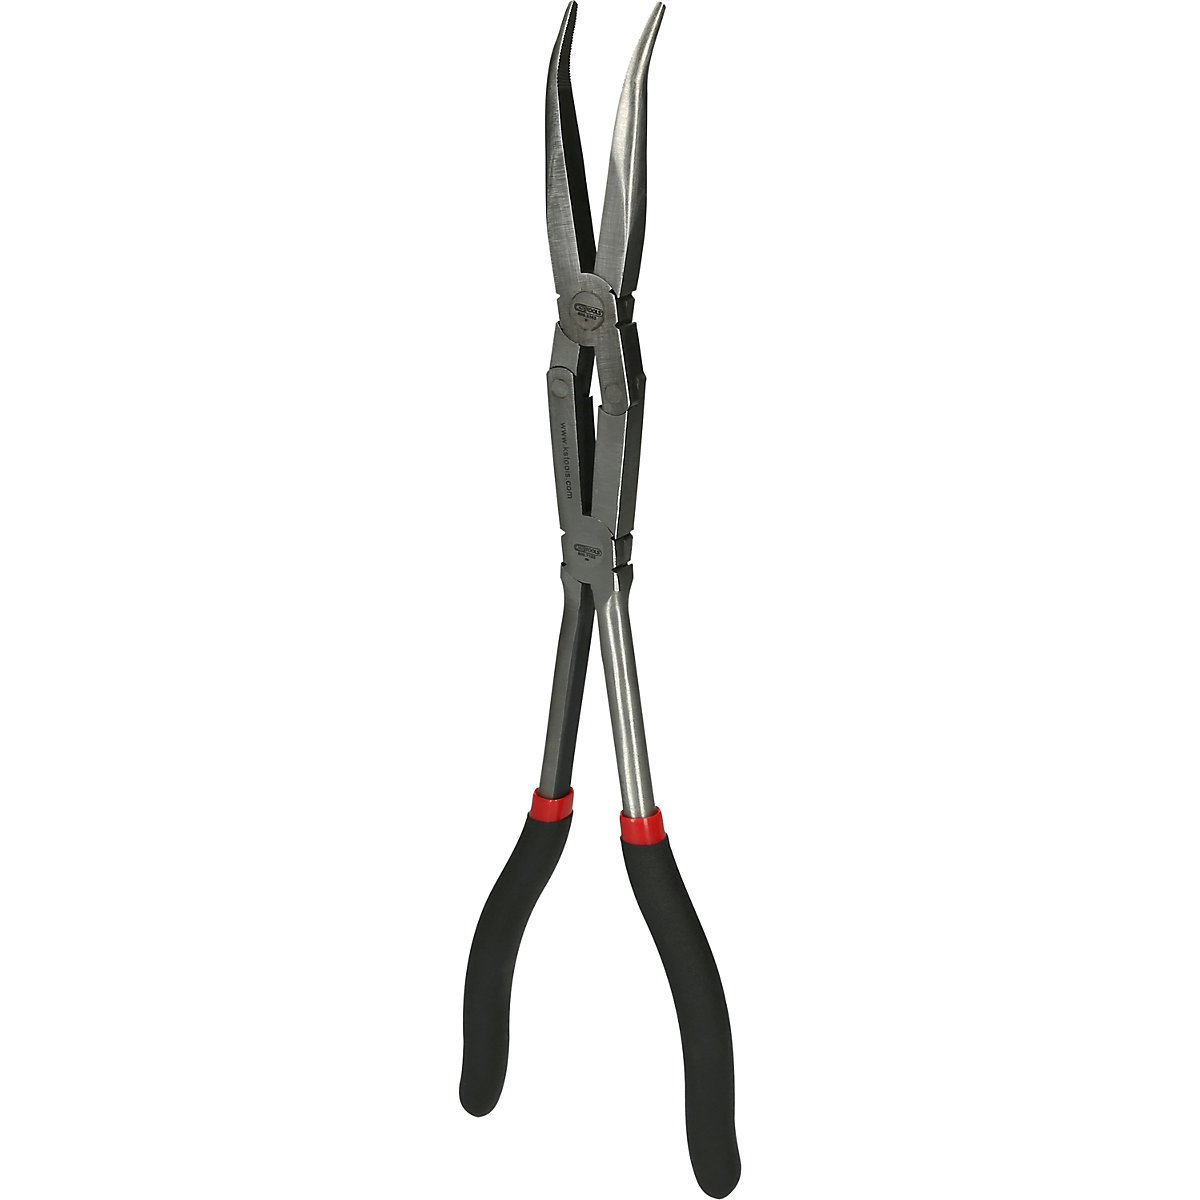 Alicate de bicos semirredondos com articulação dupla XL, curvado a 45° – KS Tools